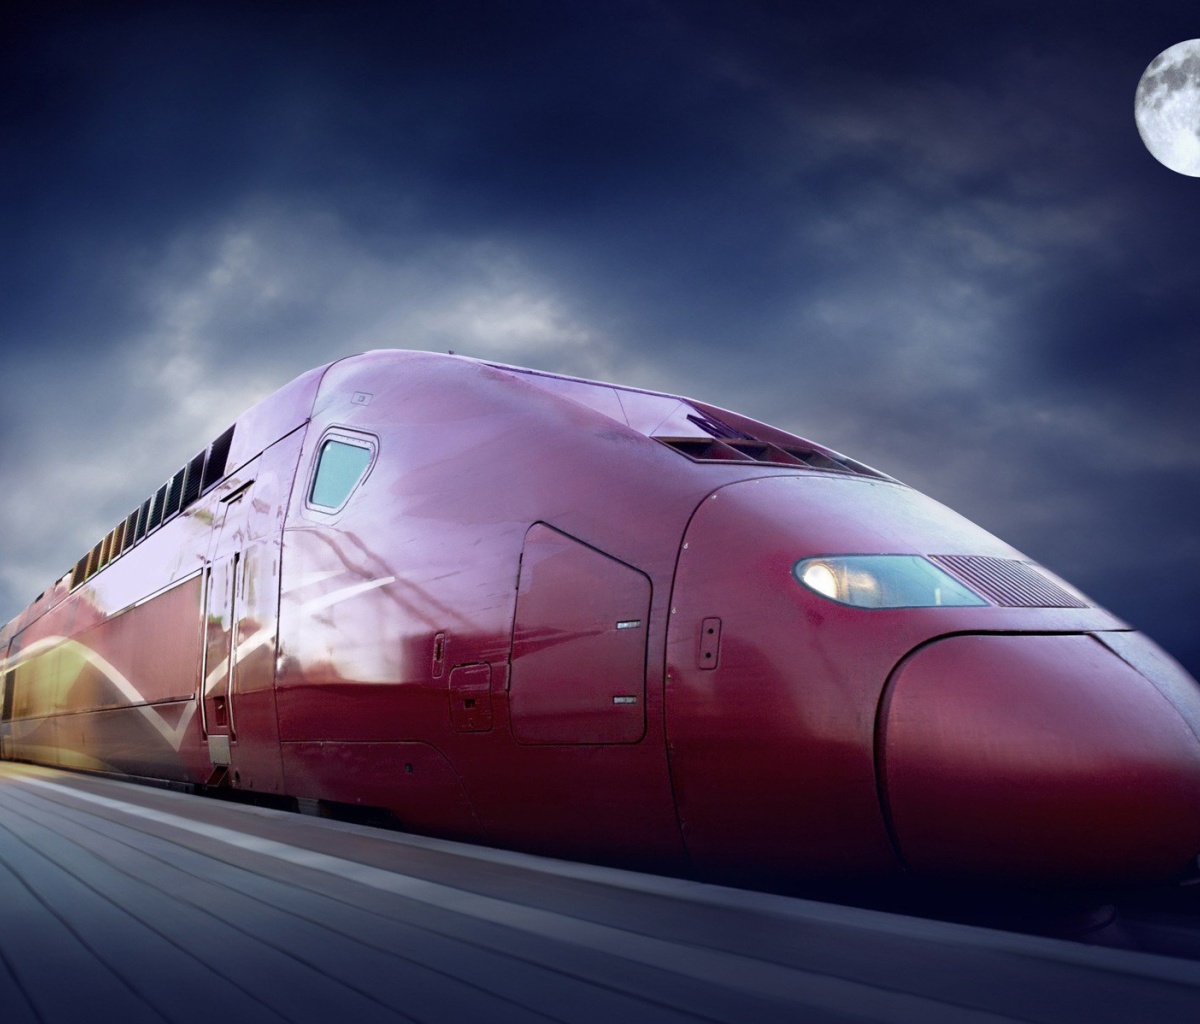 Обои Thalys train on high speed line 1200x1024